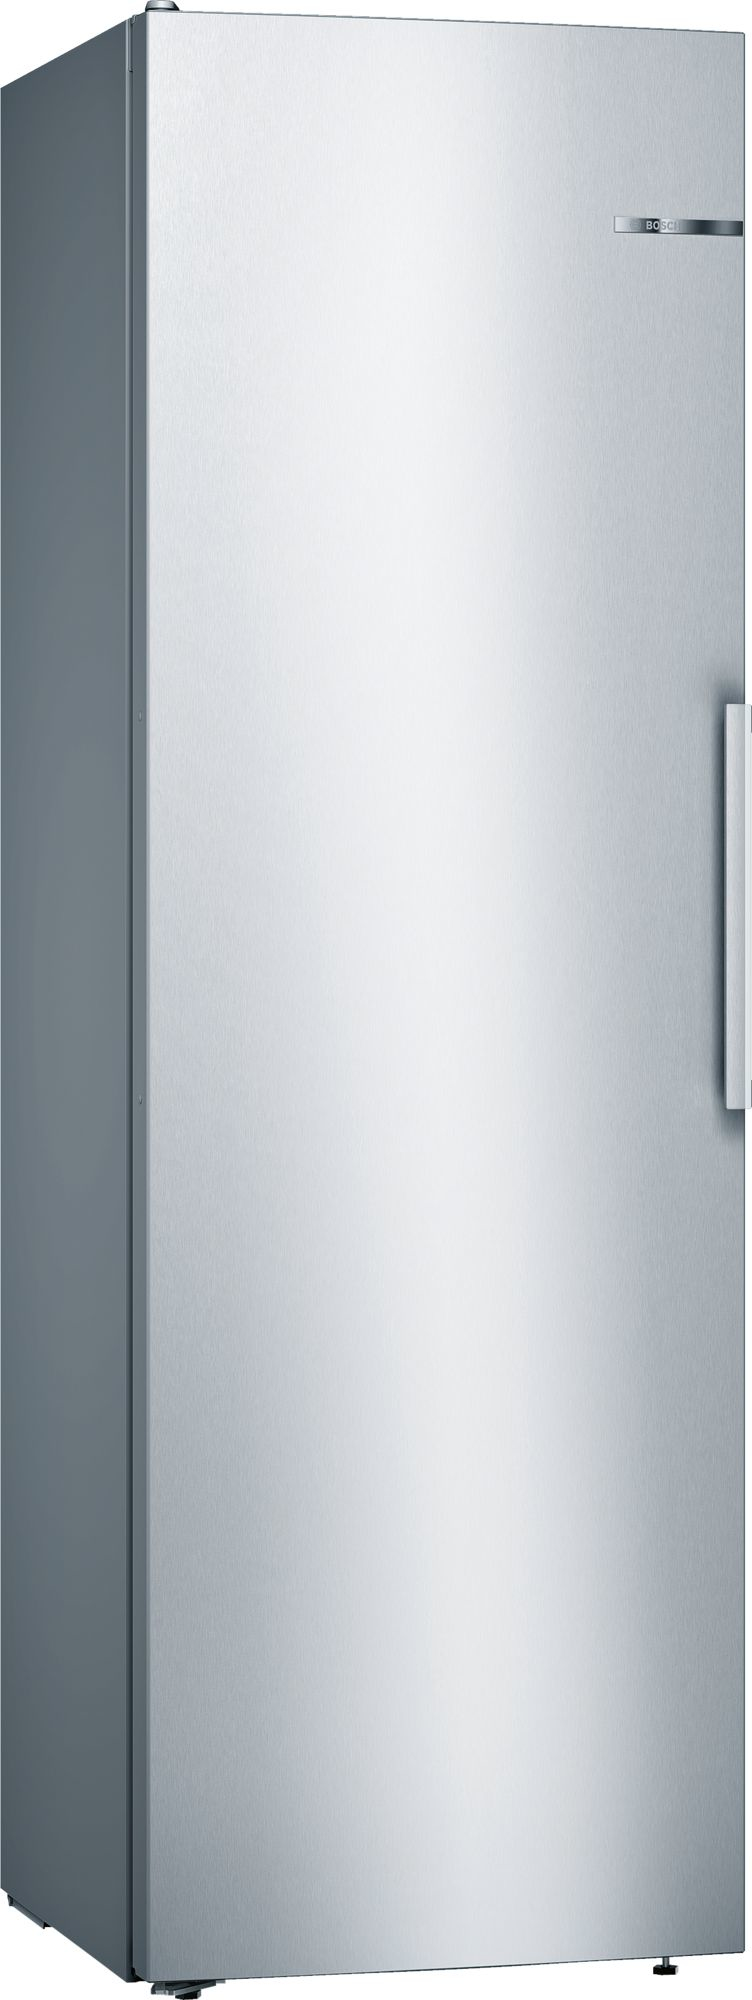 Bosch Serie 4 KSV36VLEP frigorifero Libera installazione Acciaio inossidabile 346 L A++ [KSV36VLEP]